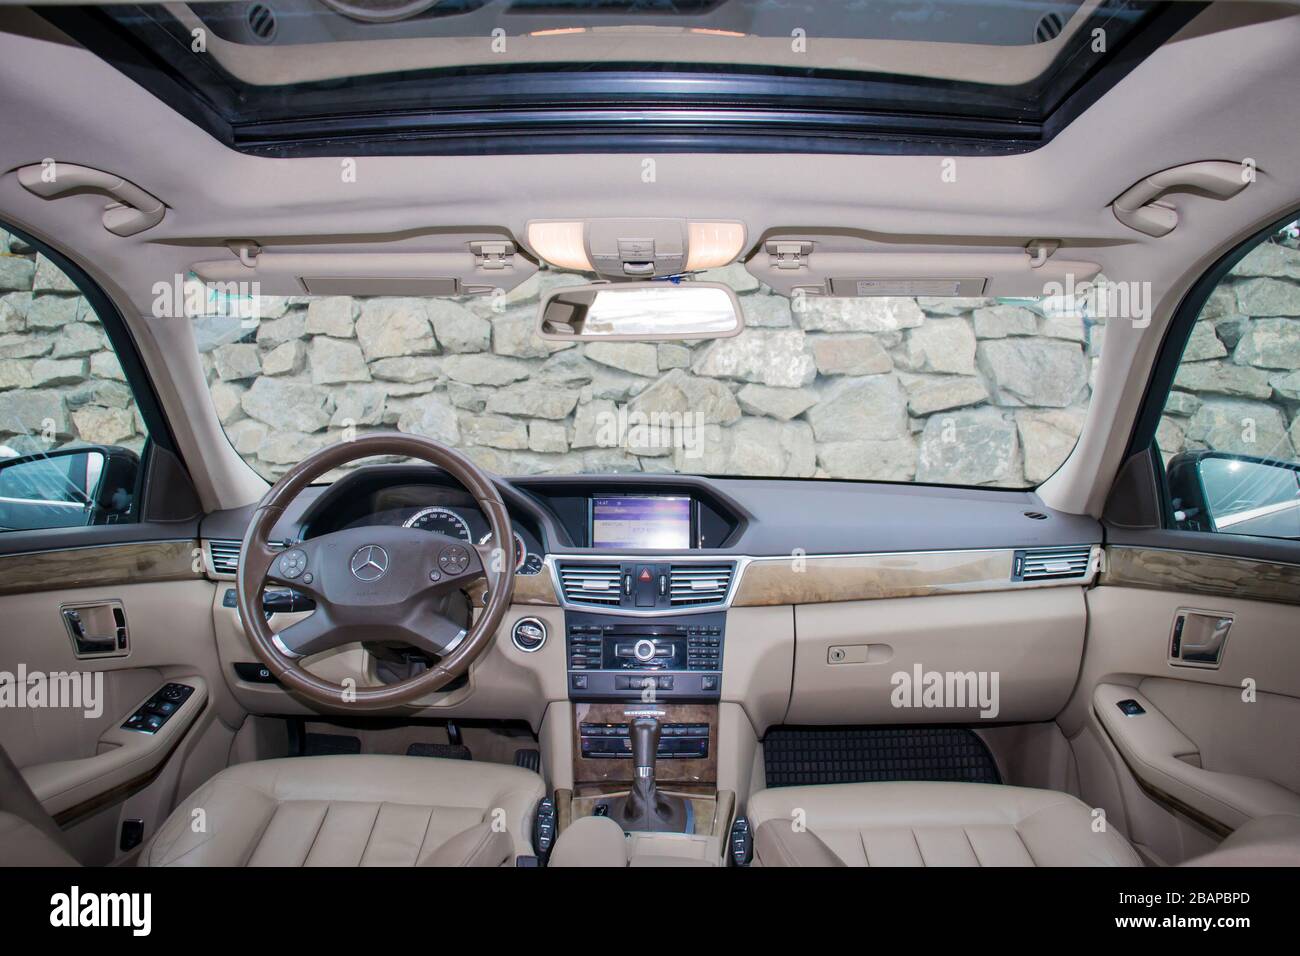 Mercedes Benz W212 - Jahr 2013, Avantgarde-Ausstattung, beigefarbenes Leder Luxus-Interieur - E-Klasse 250 CDI, Sonderanfertigungen - von Mitarbeitern hergestelltes Auto, Stockfoto